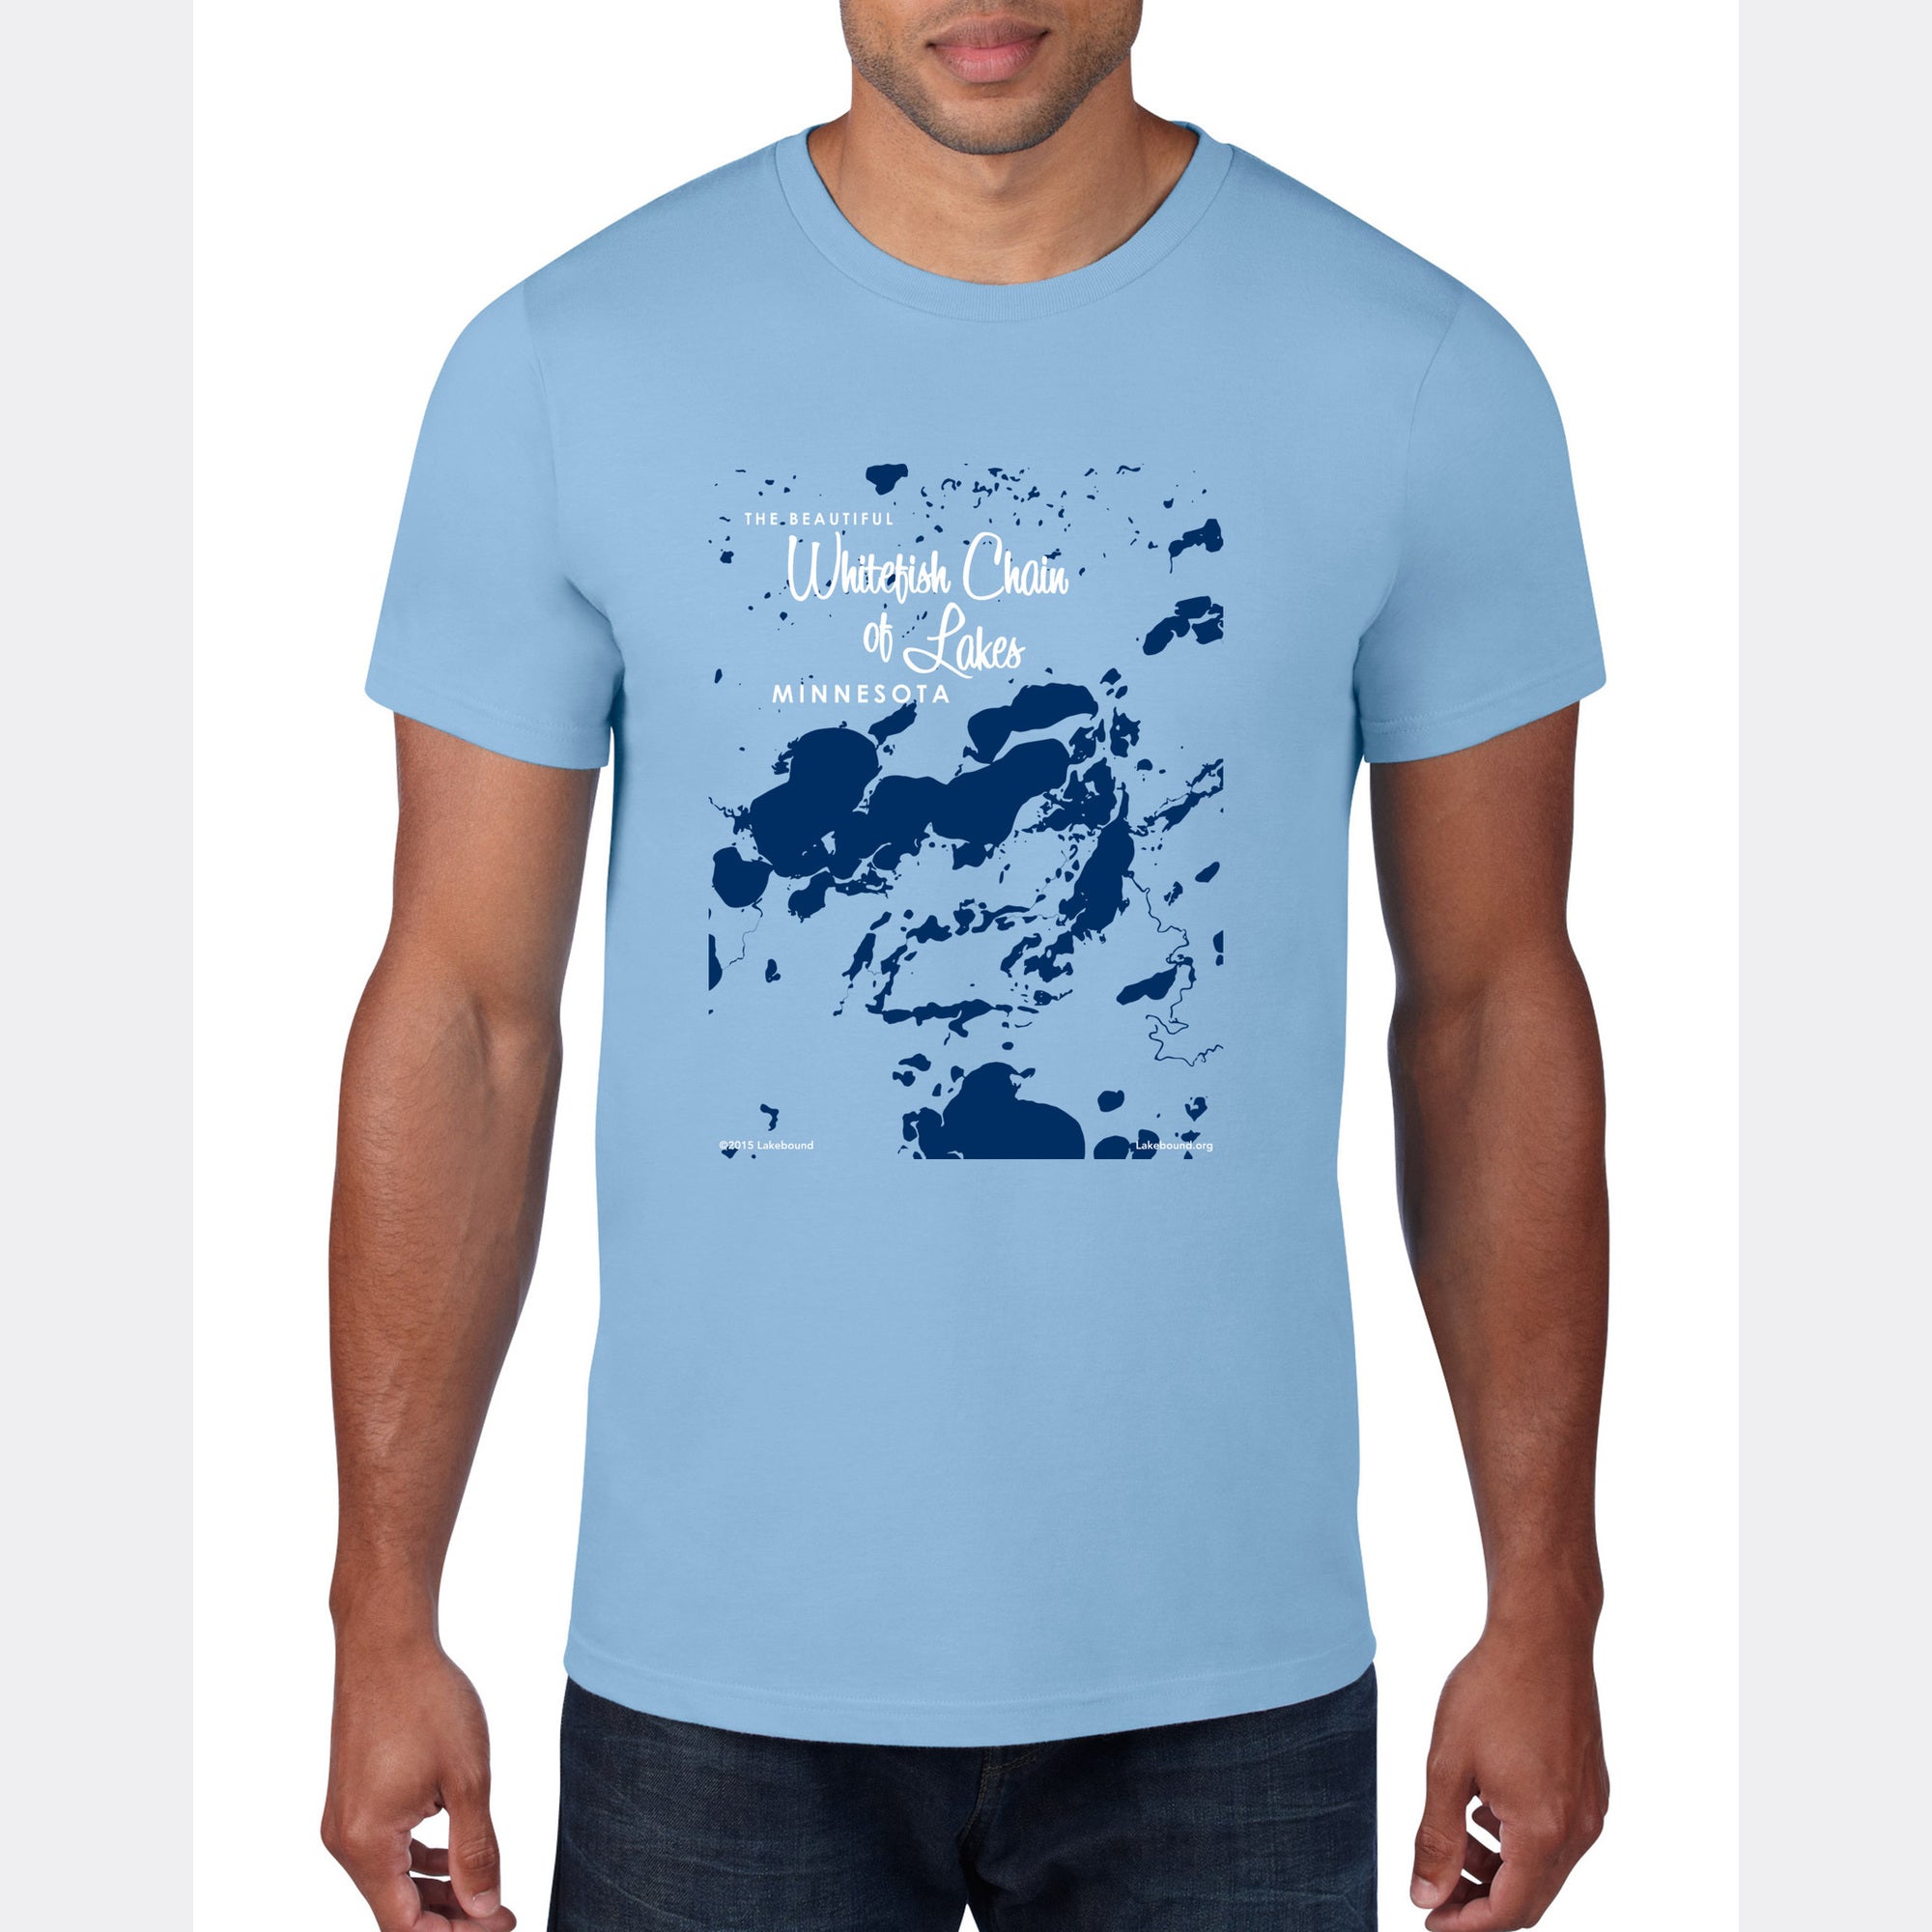 Whitefish Chain of Lakes Minnesota, T-Shirt